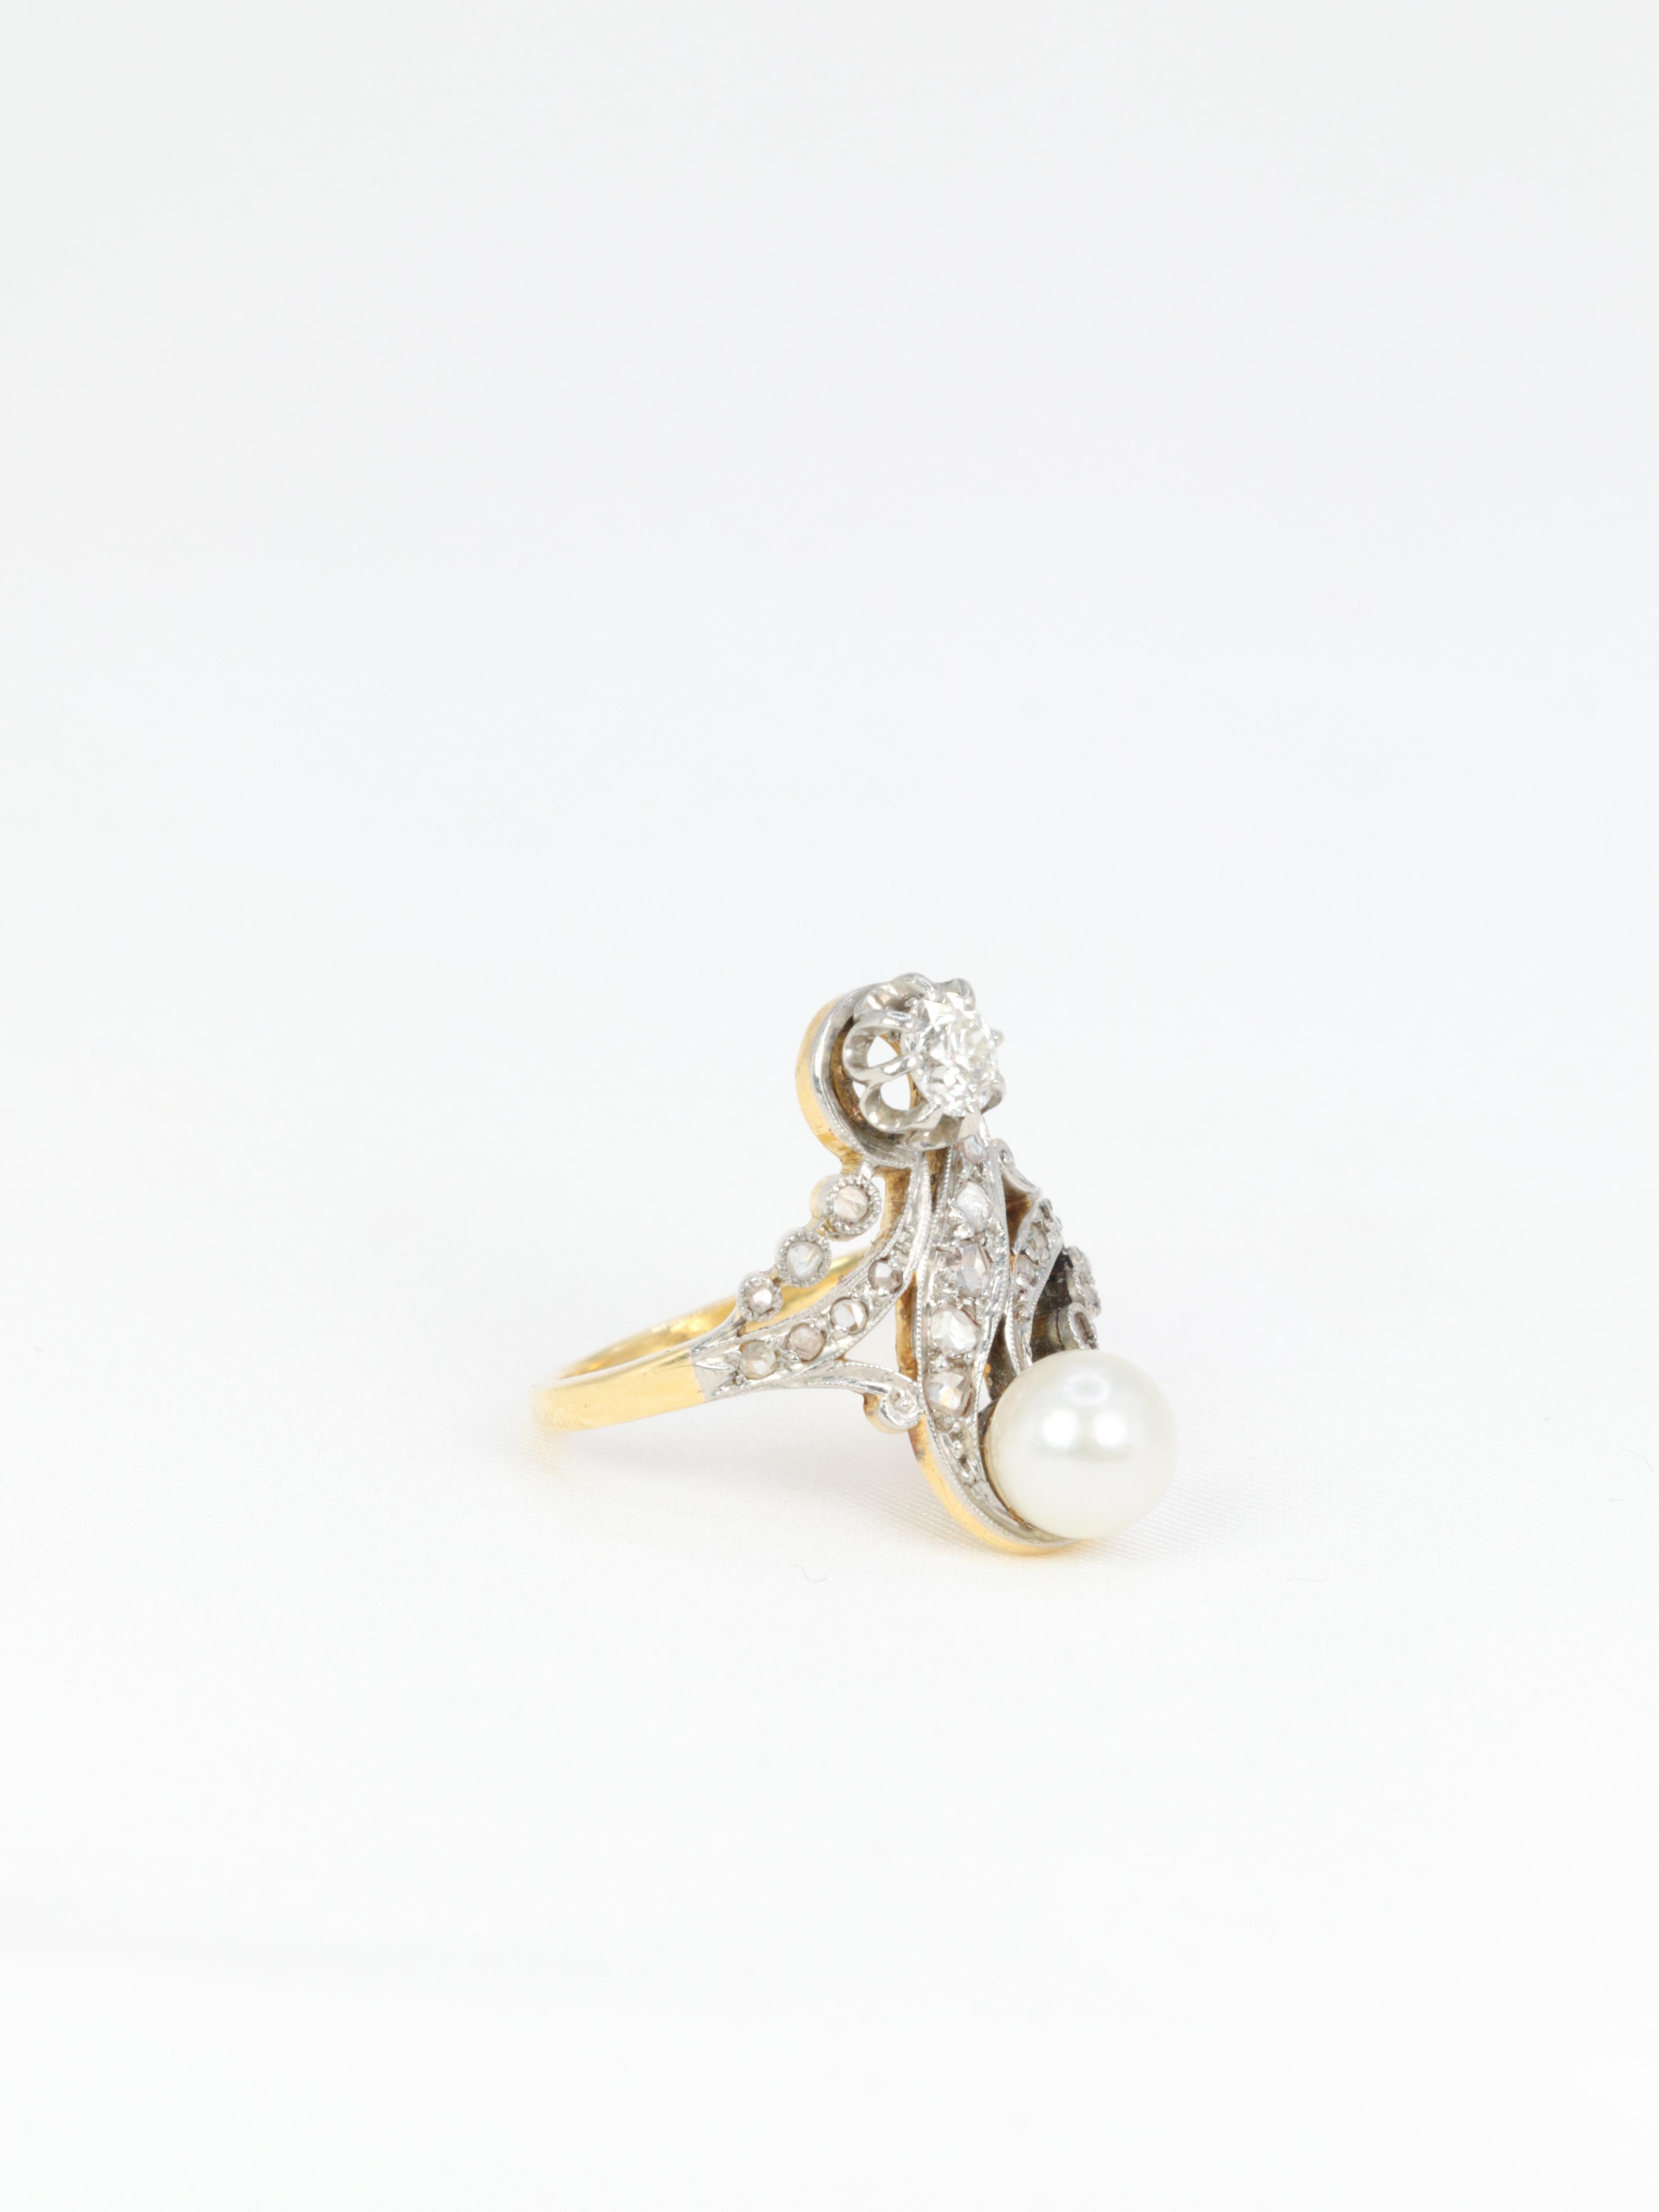 Edwardianischer Ring aus 18 Karat (750°/°°) Weißgold und Silber, verziert mit einer Perle und einem sehr hochwertigen Diamanten im Altminenschliff mit einem Gewicht von 0,4 Karat, der von eleganten, mit Diamanten im Rosenschliff gepflasterten